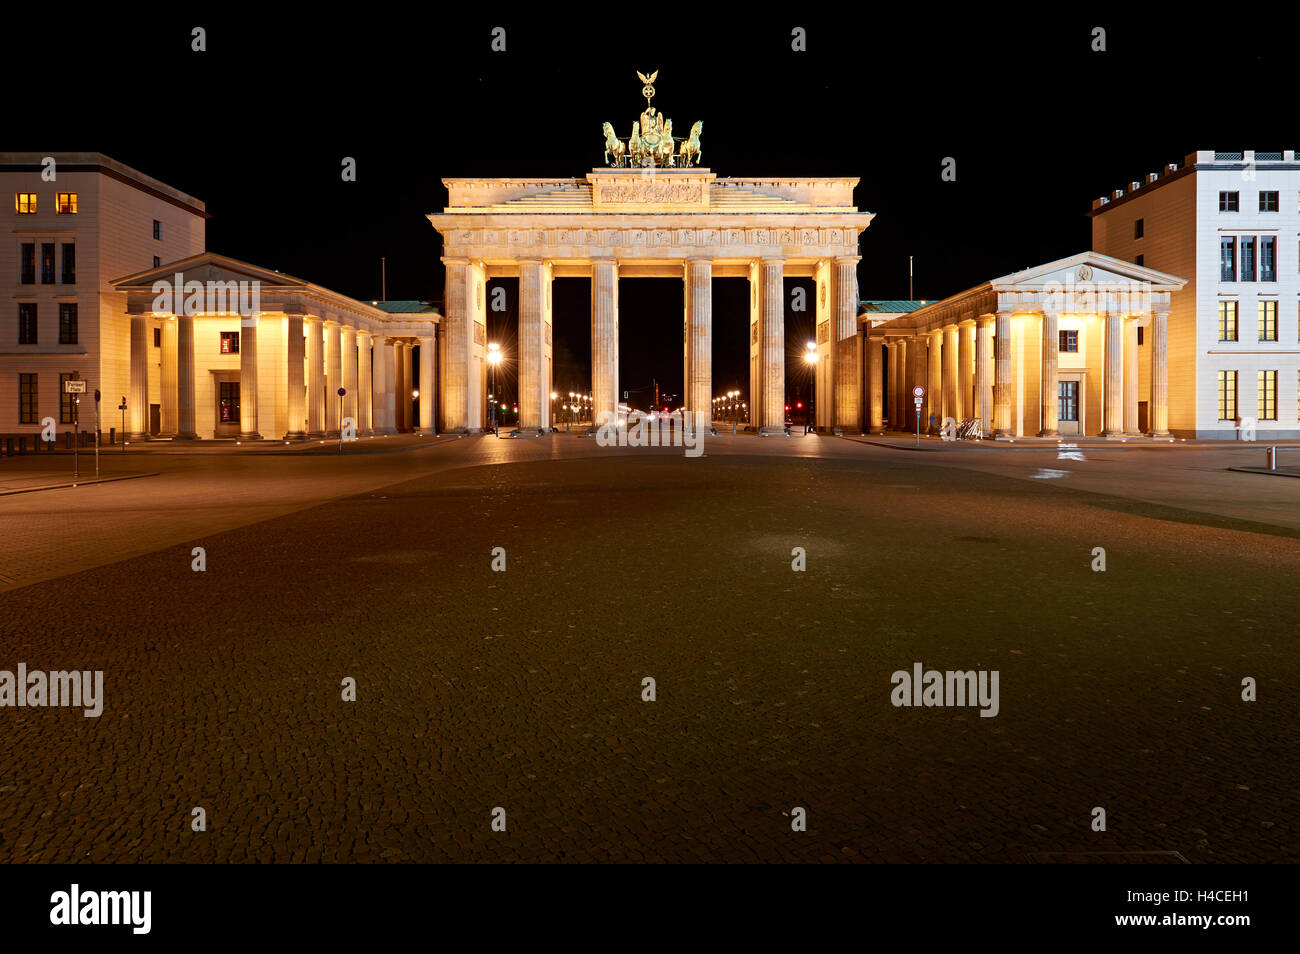 Die Bundesrepublik Deutschland, Berlin, Brandenburger Tor, die Quadriga, Nacht erschossen, Pariser Platz Stockfoto